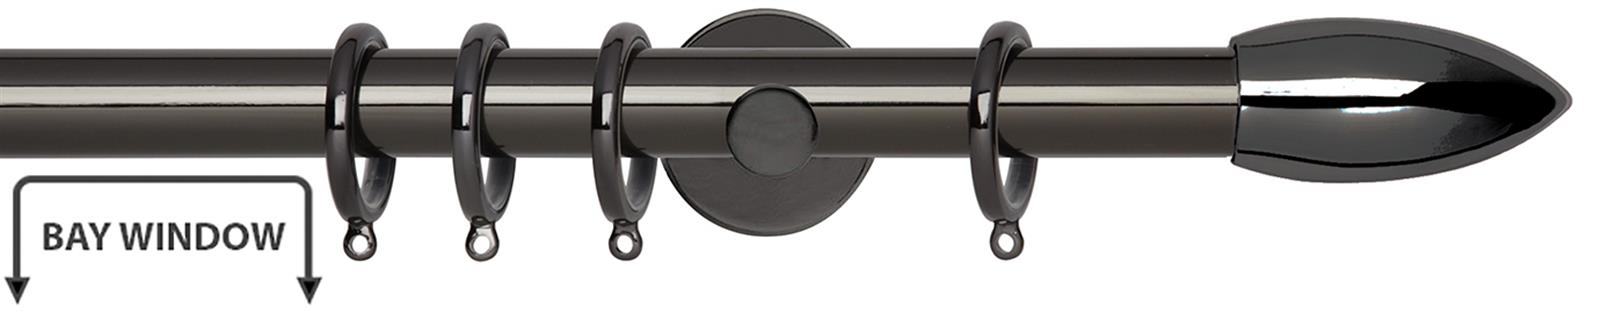 Neo 28mm Bay Window Pole Black Nickel Bullet